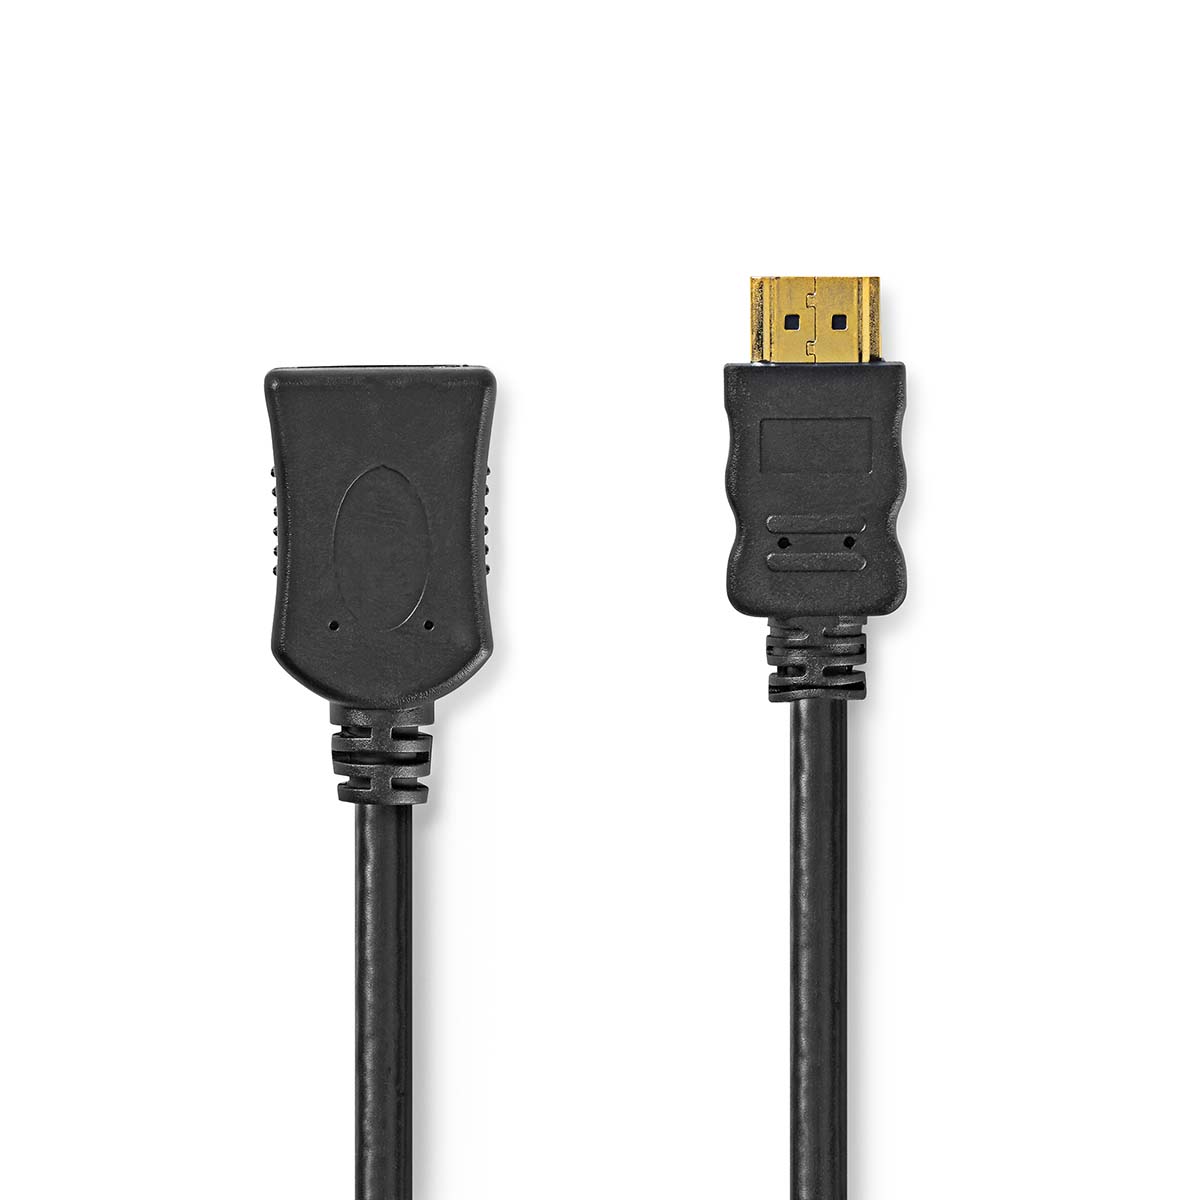 Nedis High Speed HDMI prodlužovací kabel s ethernetem, 4K, 10.2 GB/s, zástrčka HDMI - zástrčka HDMI, 5 m, černá (CVGL34090BK50)